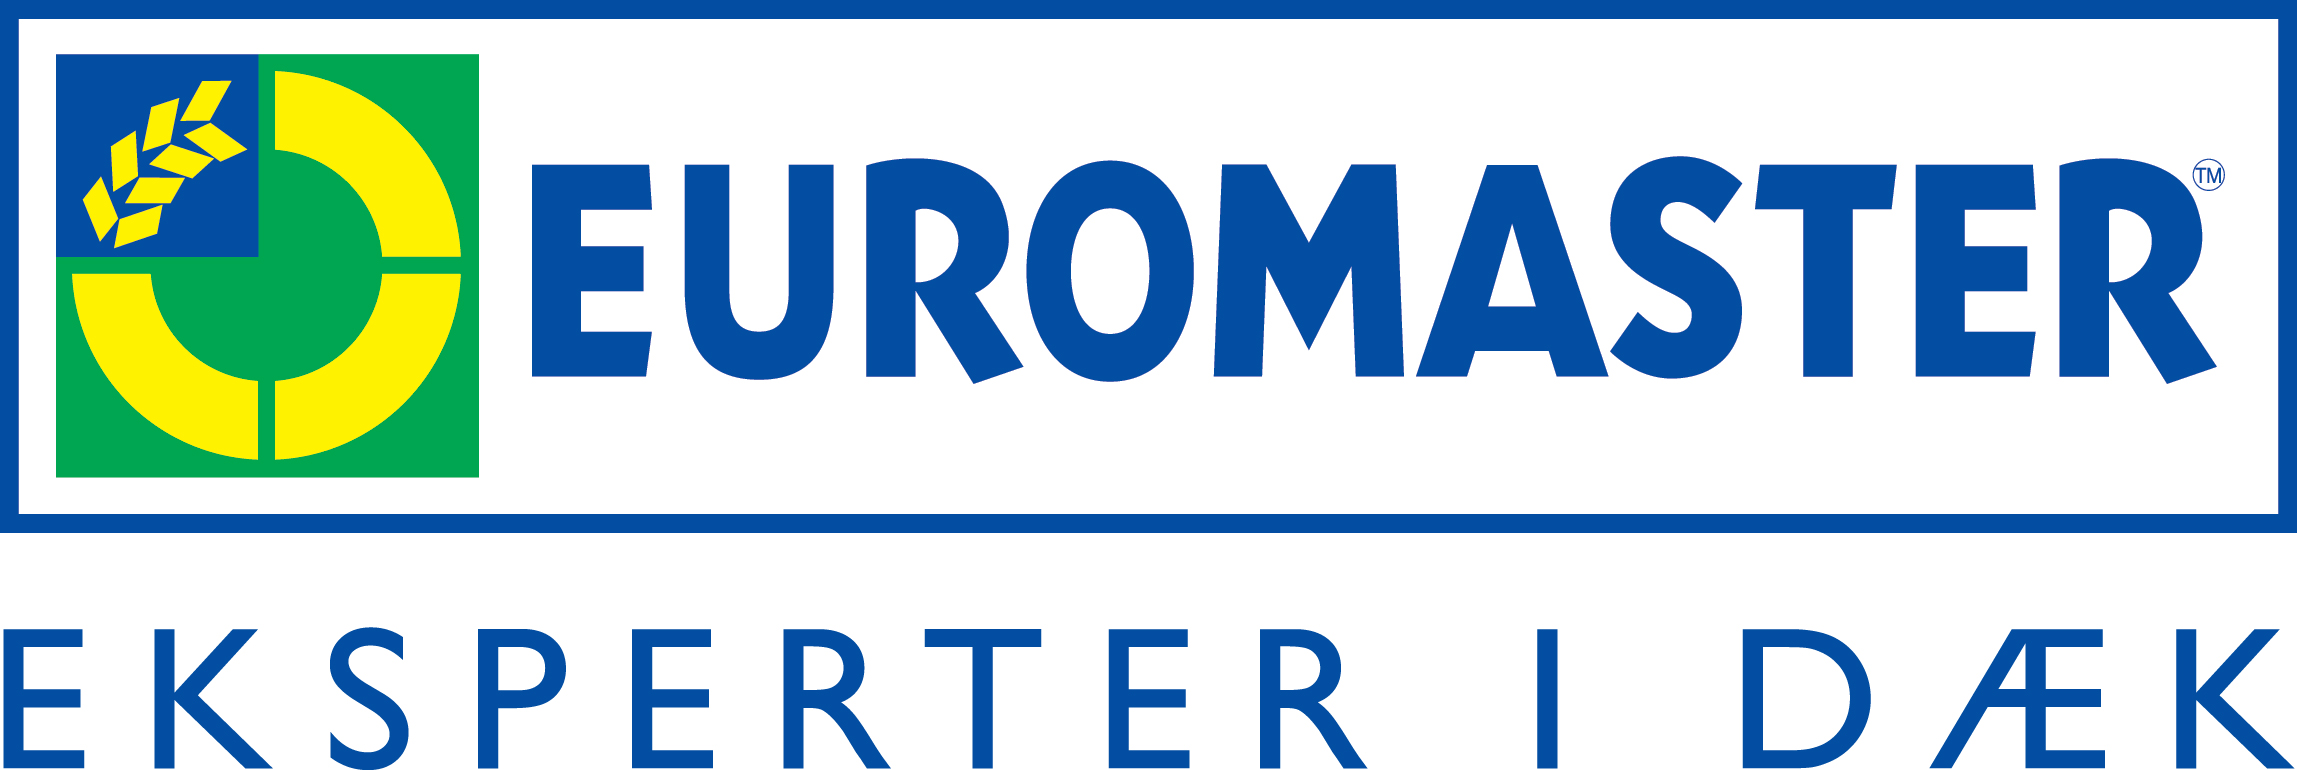 Euromaster Helsingør gammel logo